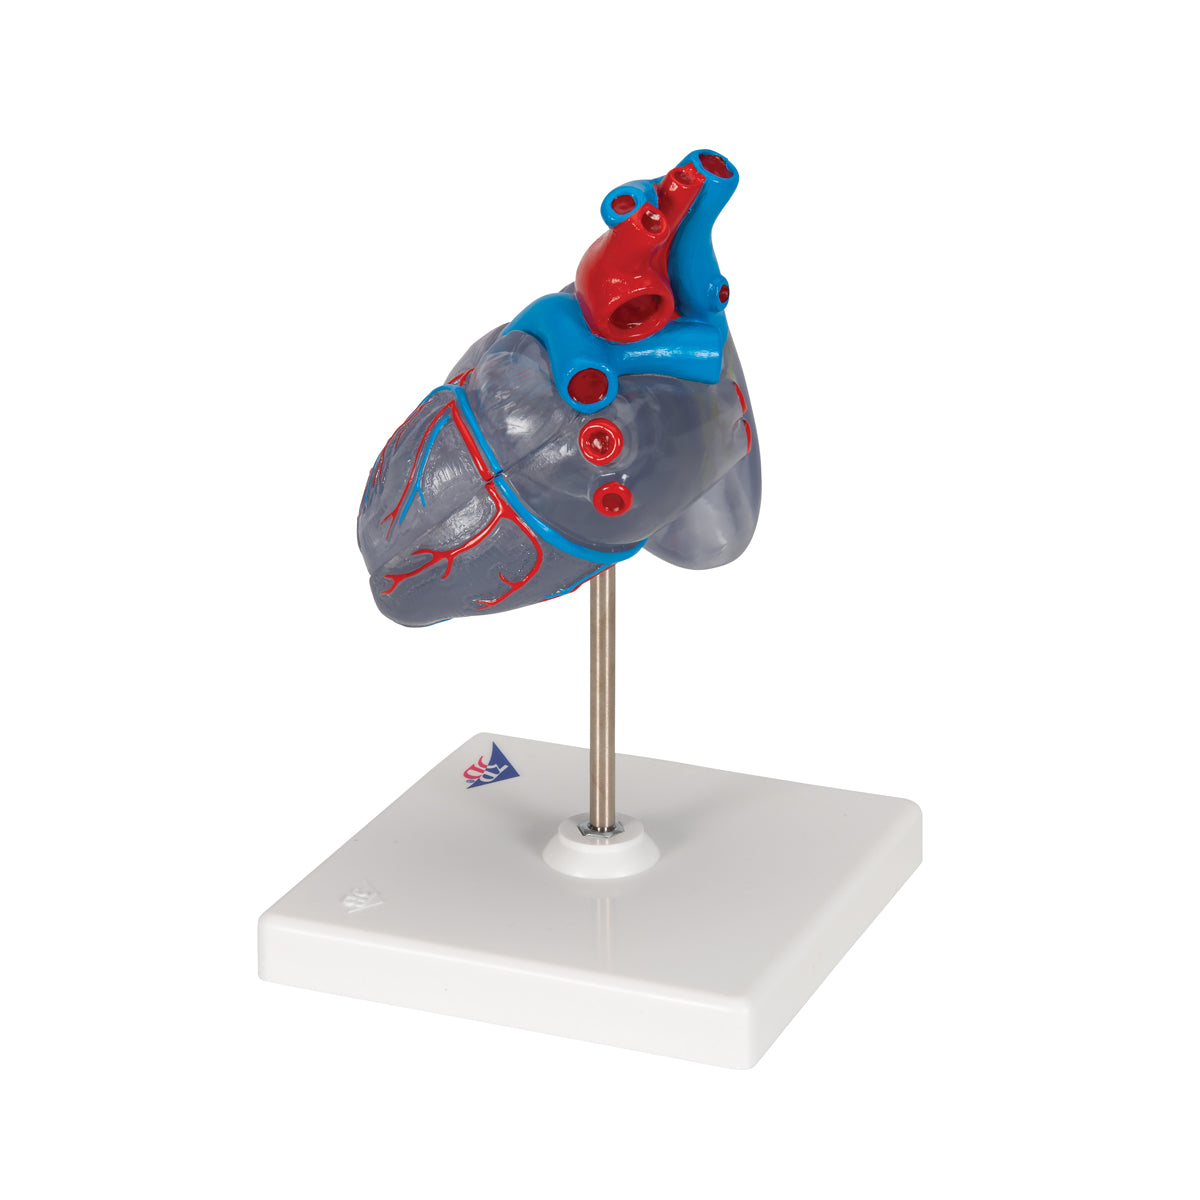 Skalad och transparent hjärtmodell med impulsledningssystemet